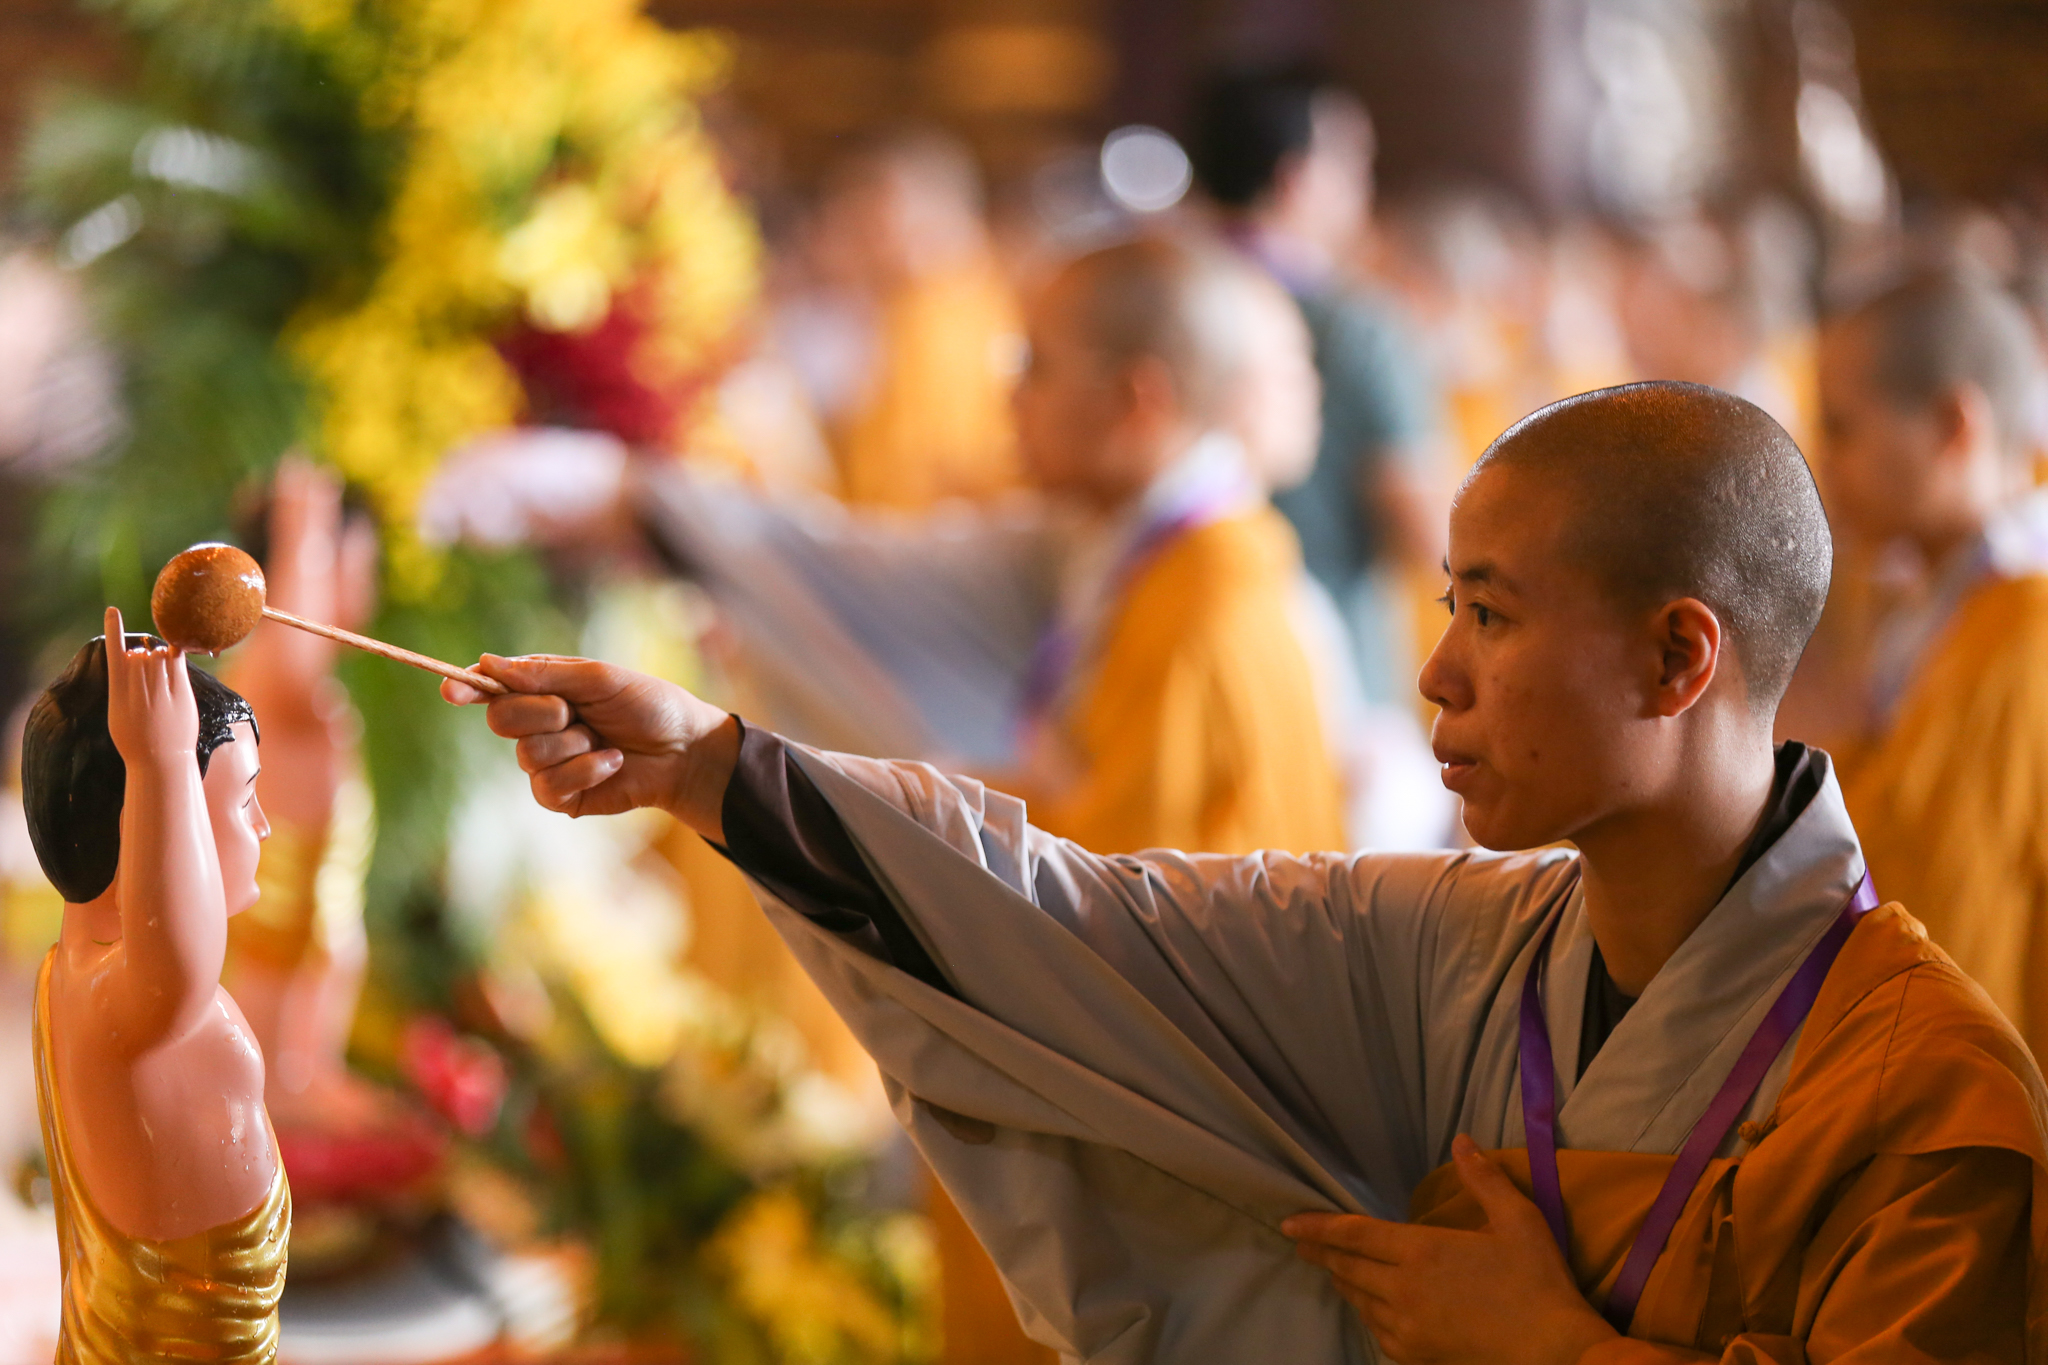 Tắm Phật là nghi thức tưới nước thơm lên tượng Phật sơ sinh, ngoài mục đích kỷ niệm Phật đản sanh còn mang ý nghĩa sâu sắc về sự tẩy trừ phiền não, hướng đến thanh tịnh ba nghiệp thân khẩu ý của con người.